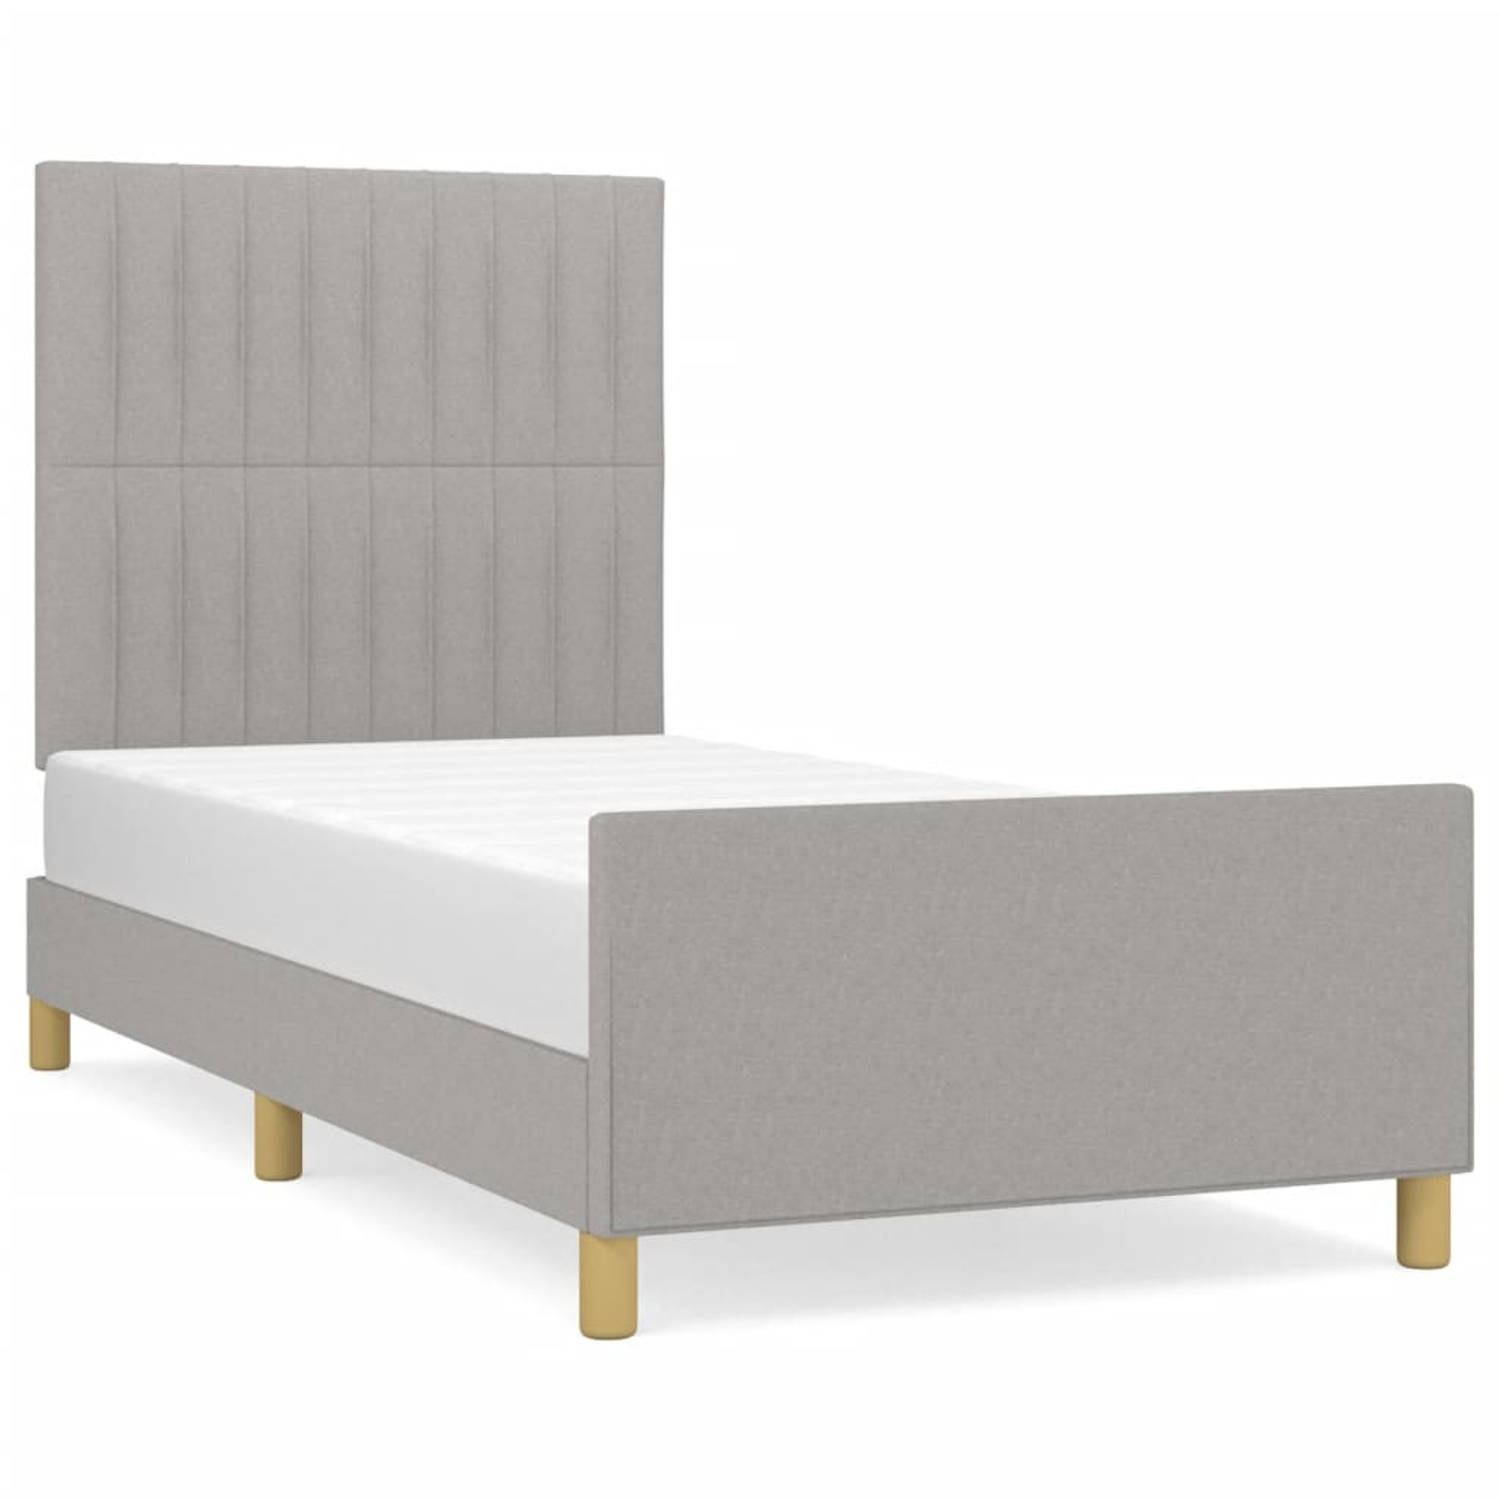 The Living Store Bedframe - Comfort - Bed - Afmetingen- 193 x 93 x 118/128 cm - Lichtgrijs - Duurzaam - Verstelbaar hoofdeinde - Ondersteunende poten - Multiplex lattenbodem - Comf